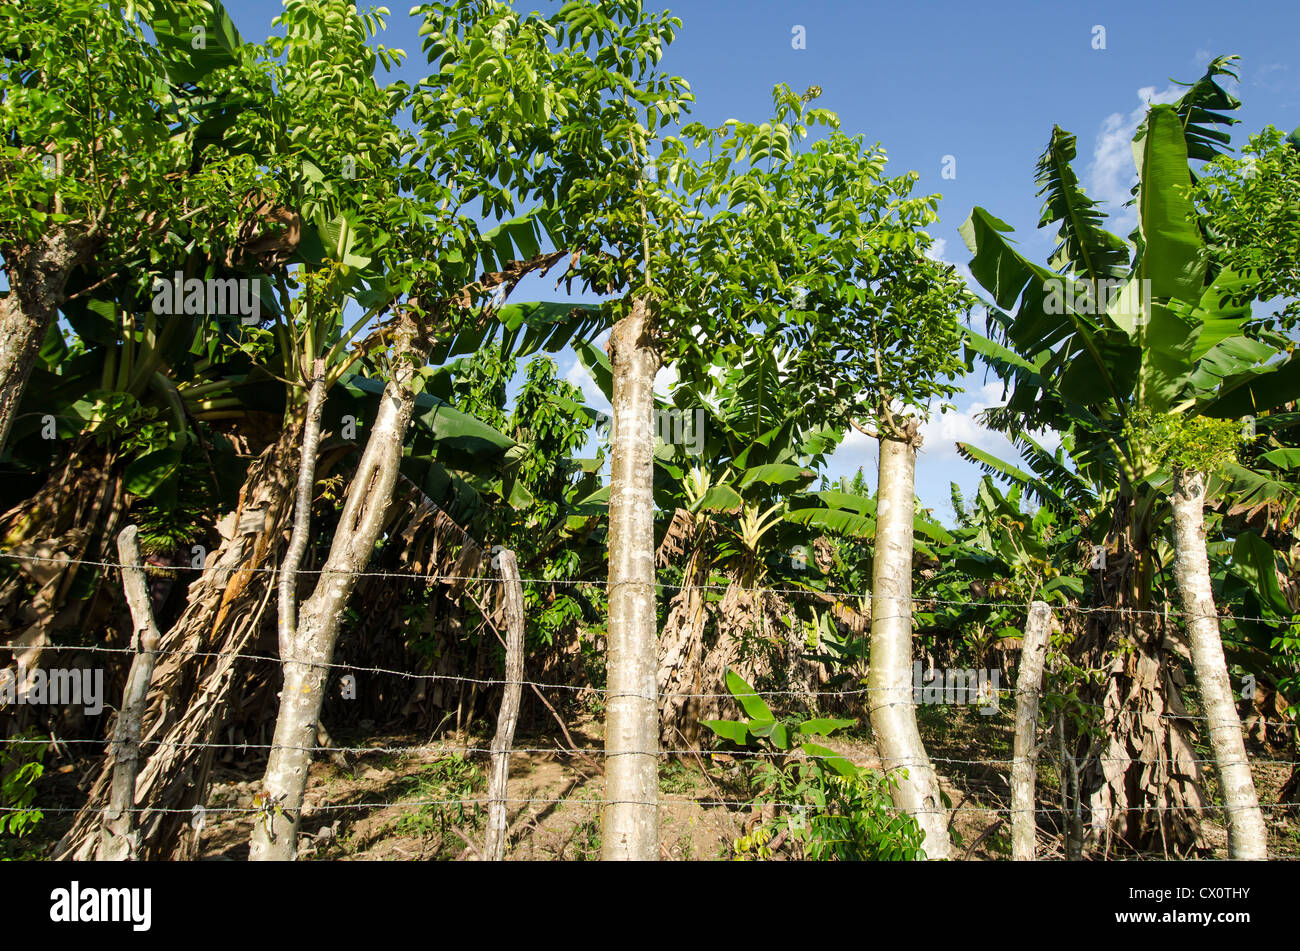 Bananenplantage mit Bananenstauden und Widerhaken Drahtzaun machte der alte Holz Steaks, Boca de Yuma, Dominikanische Republik Stockfoto